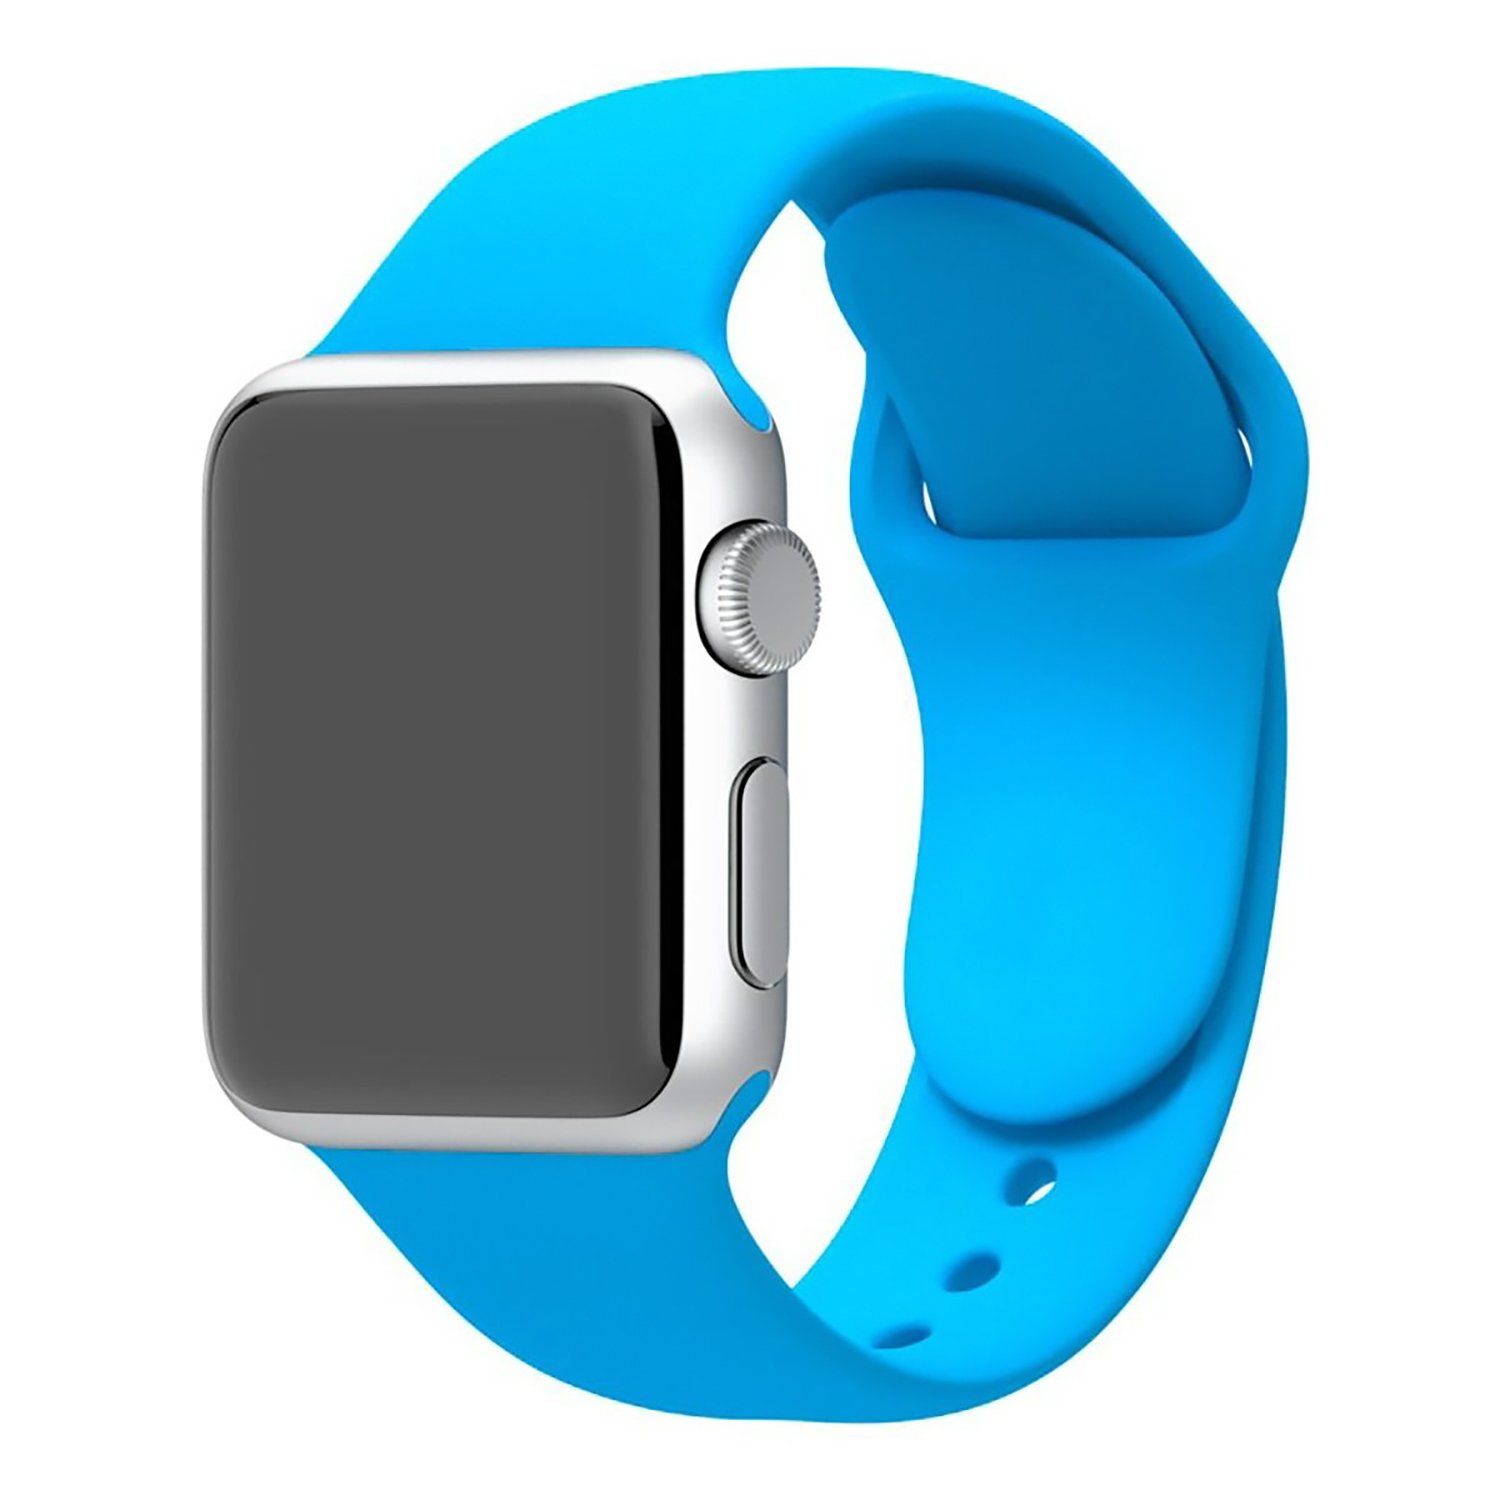 Ремешок для Эппл вотч силиконовый. Силиконовый ремешок для Apple watch 38. Голубой ремешок АПЛ вотч. Voorca ремешок Sport Band для Apple watch 38/40mm. Blue sport band